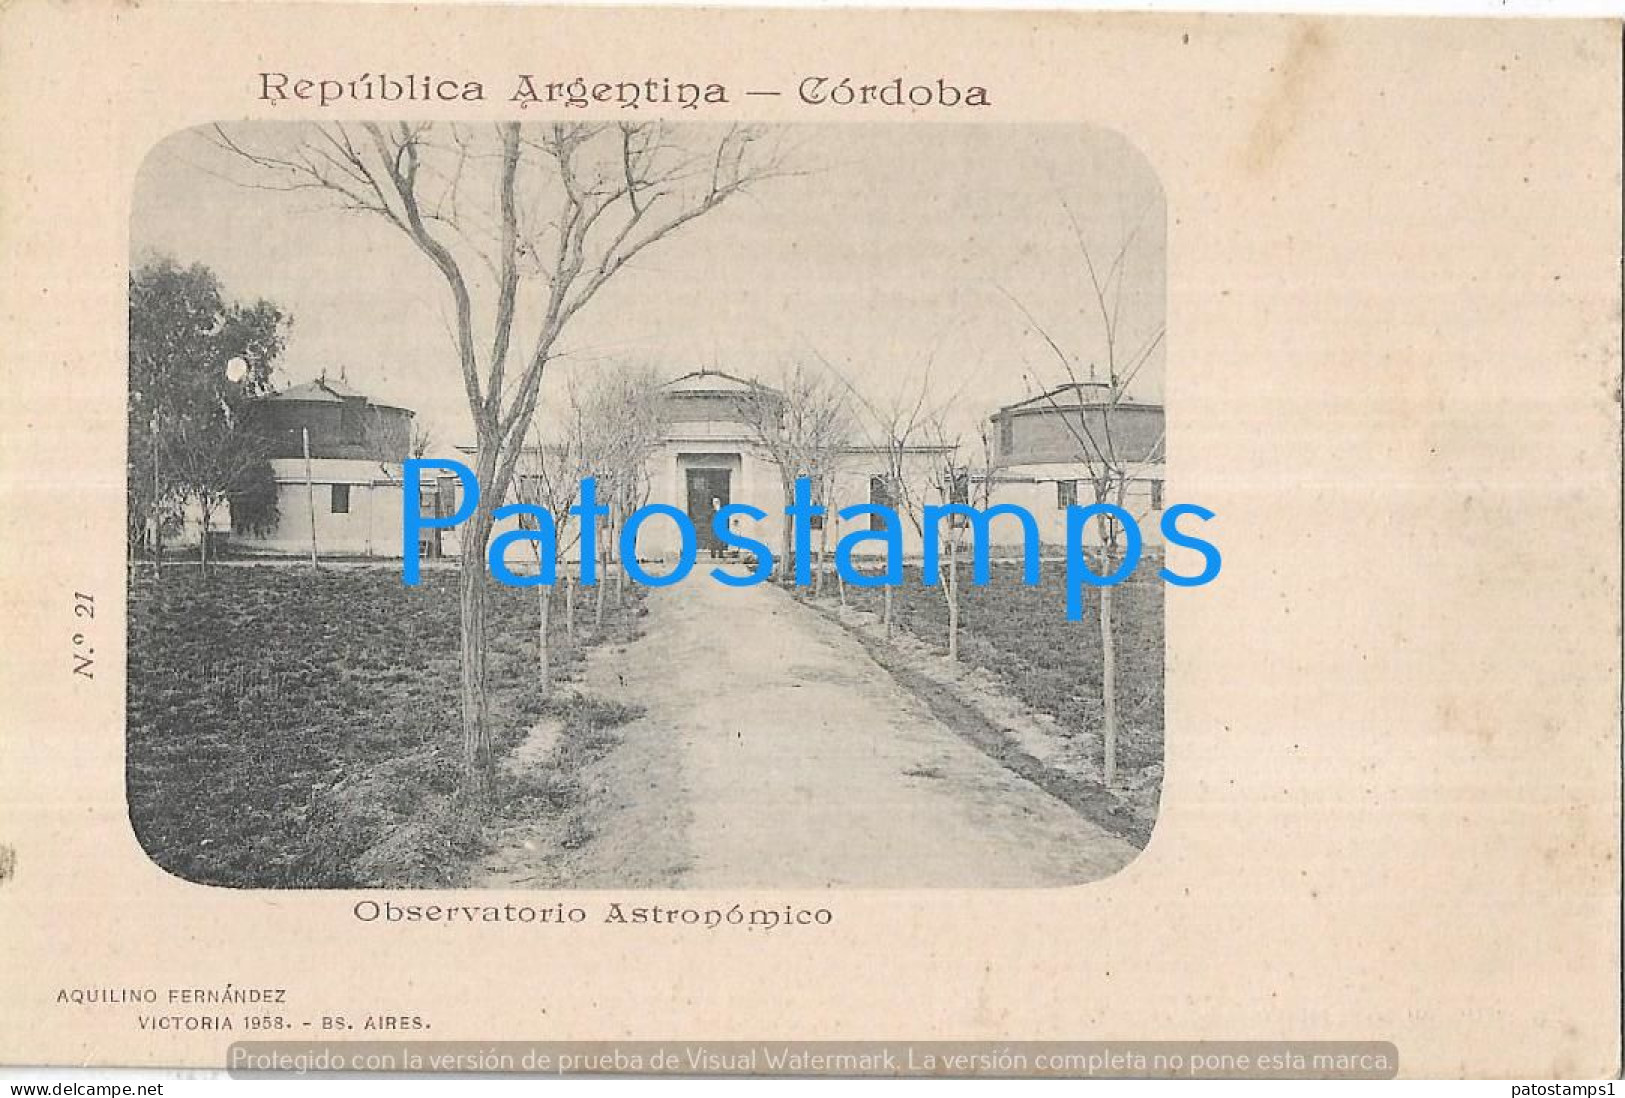 227293 ARGENTINA CORDOBA OBSERVATORIO ASTRONOMICO SPOTTED COLECCION AQUILINO FERNANDEZ POSTCARD - Argentina